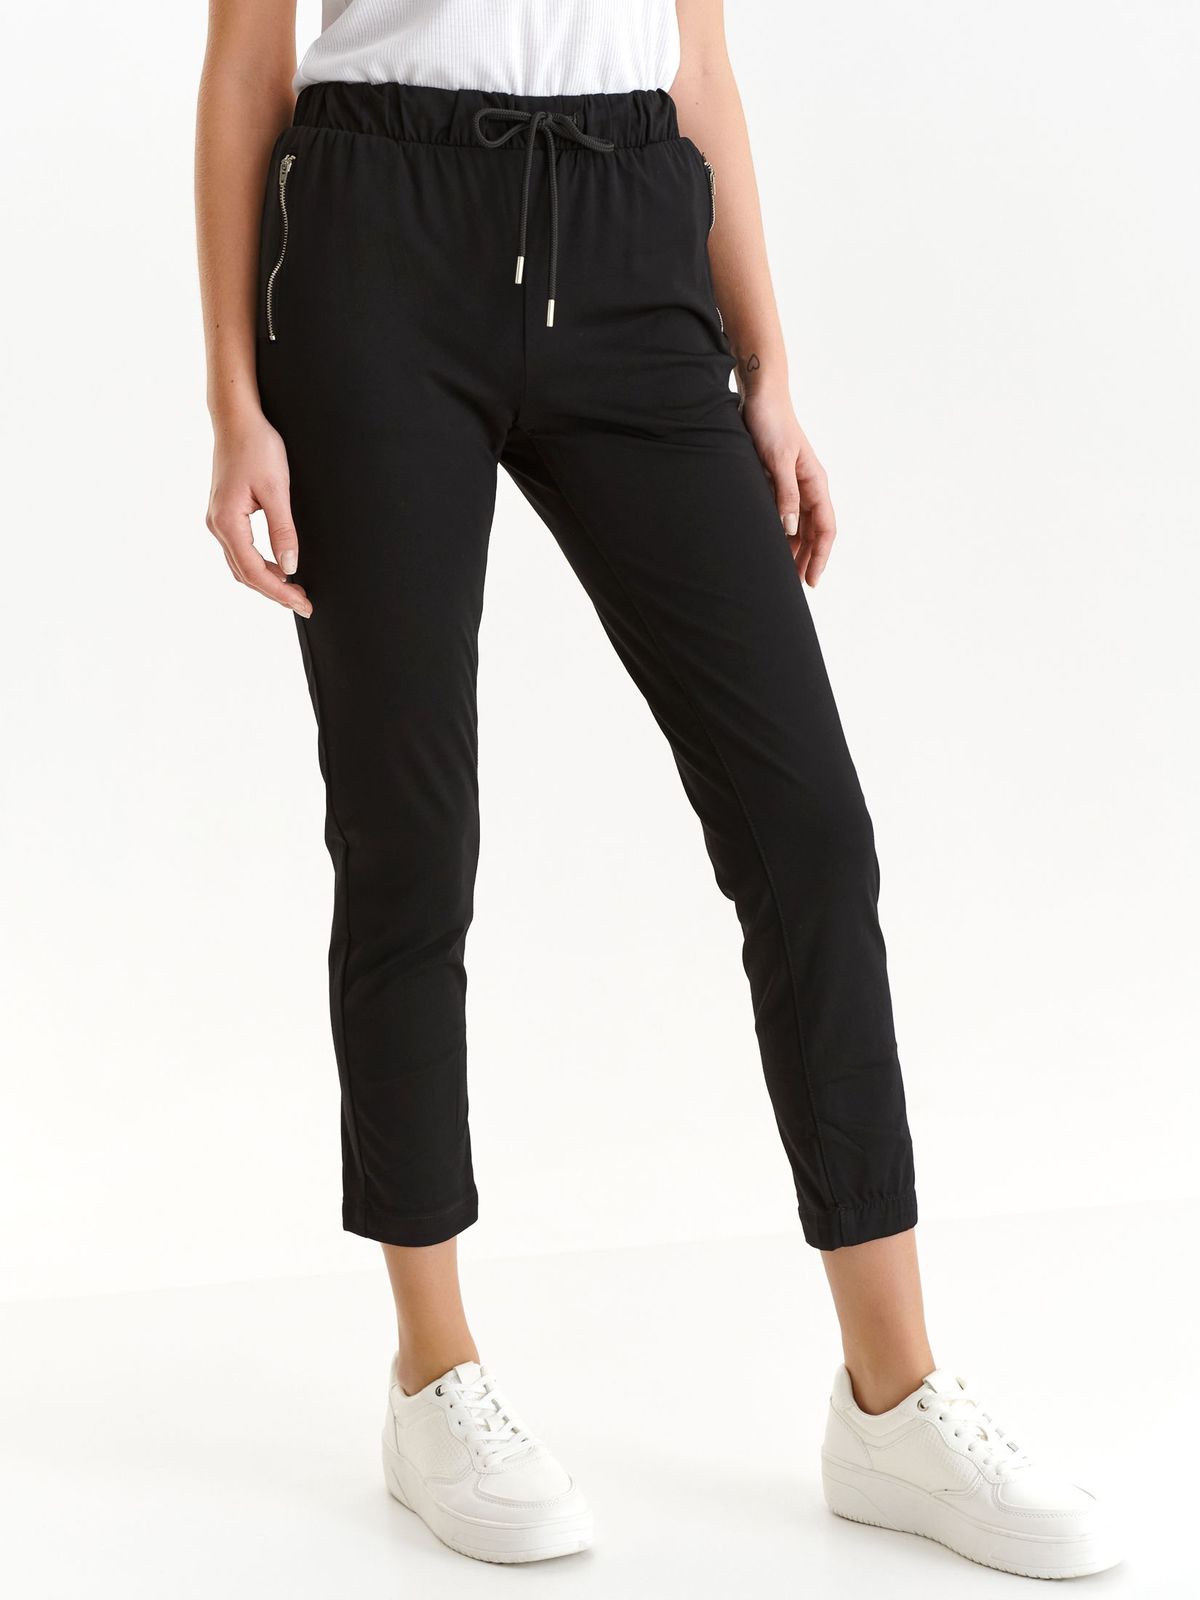 Pantaloni din material elastic negri conici cu buzunare cu fermoar - Top Secret